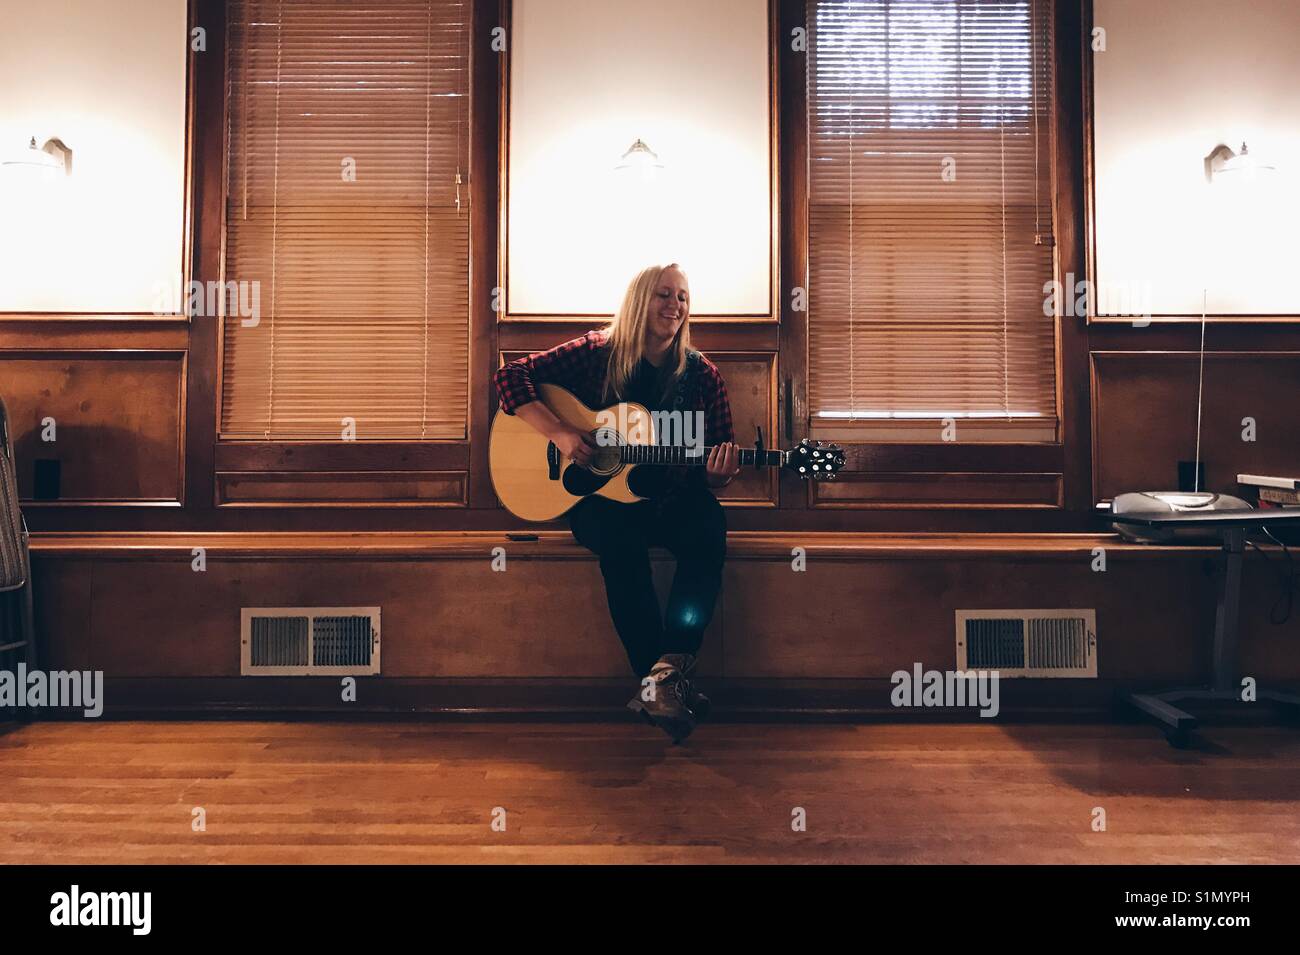 Appena una ragazza sul banco di lavoro con una chitarra. Foto Stock